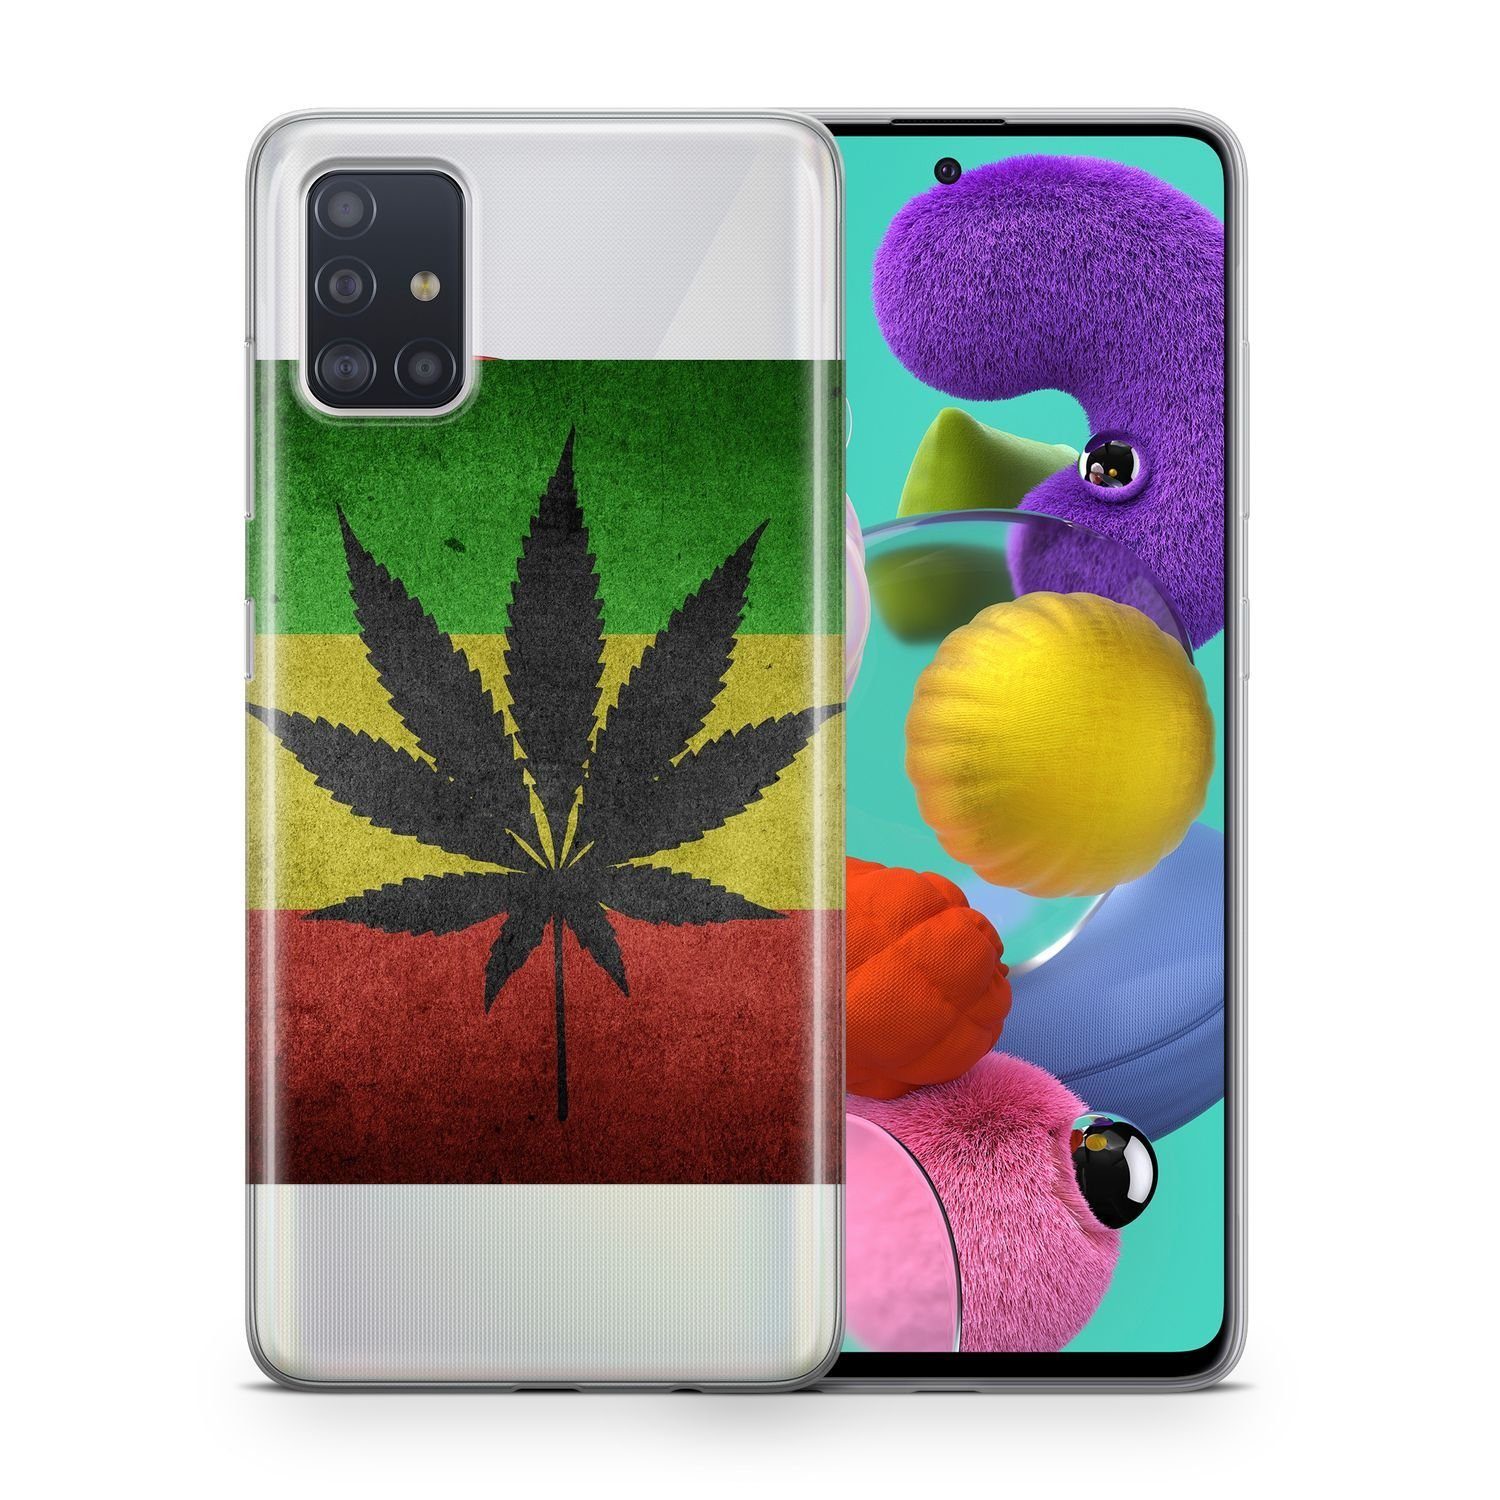 König Design Handyhülle Nokia 3, Schutzhülle für Nokia 3 Motiv Handy Hülle Silikon Tasche Case Cover Cannabis